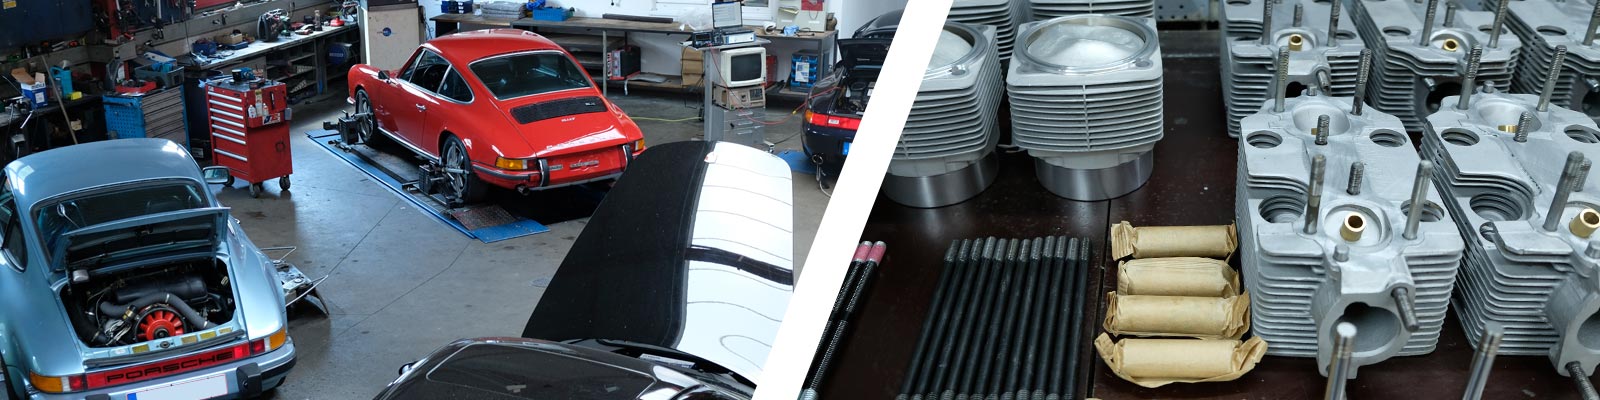 Banner zeigt Ausschnitte einiger Porsche in der Werkstatt und Ersatzteile